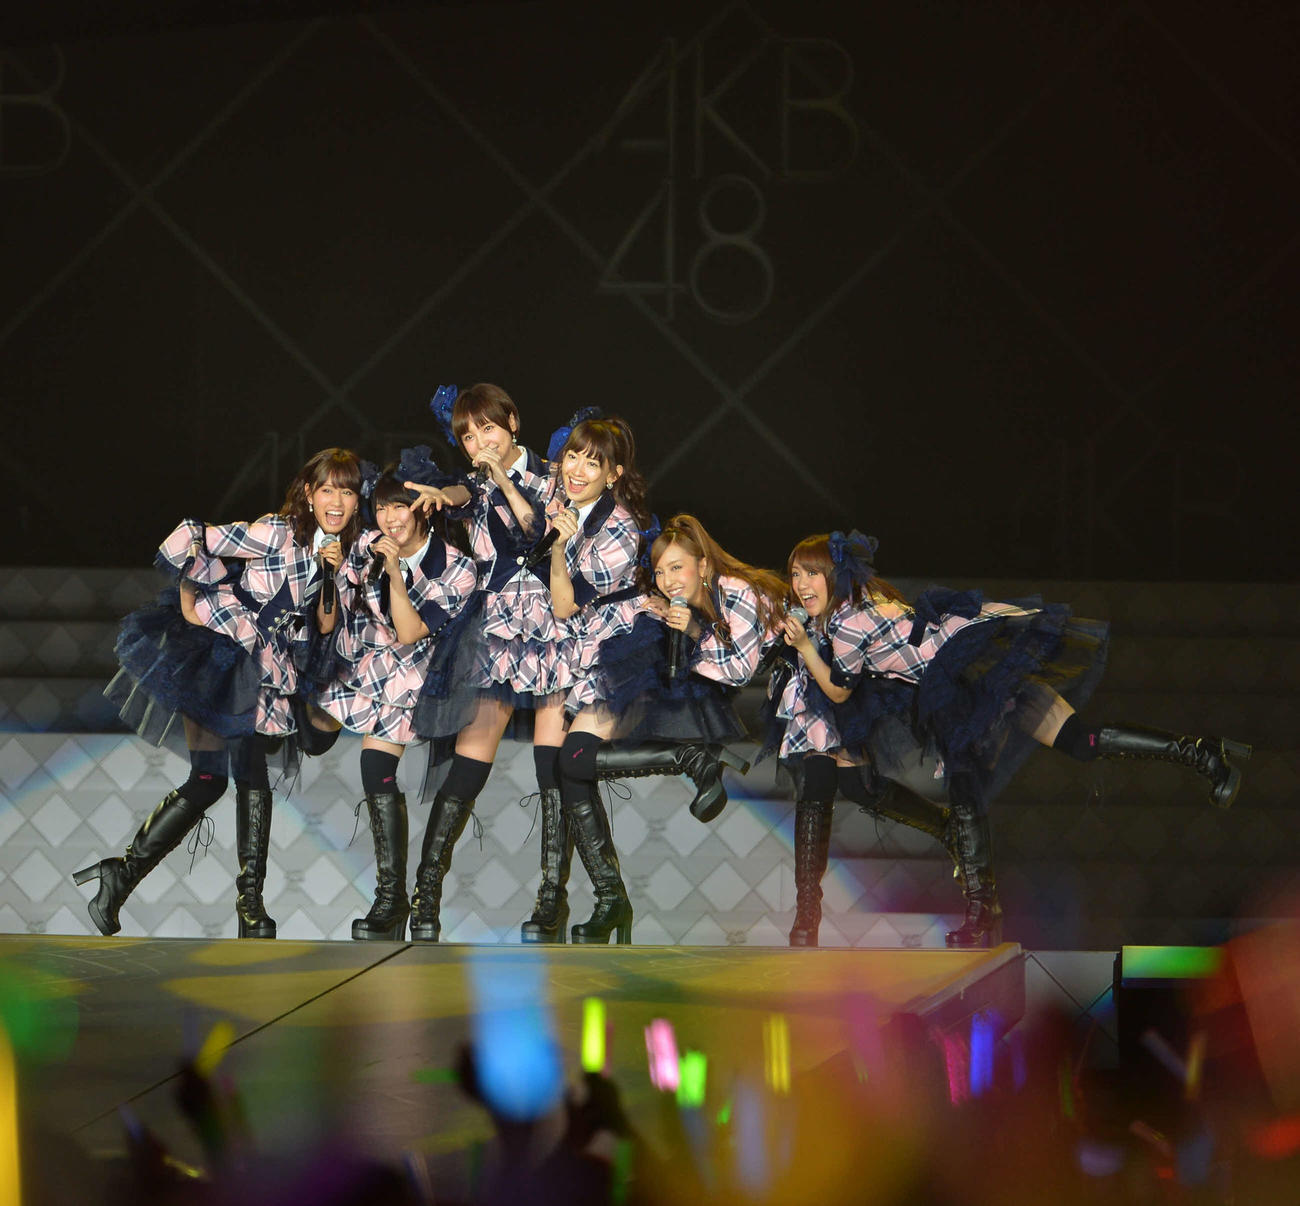 12年8月24日に行われたAKB48初の東京ドーム単独公演のオープニングも当時在籍していた1期生によるパフォーマンスだった